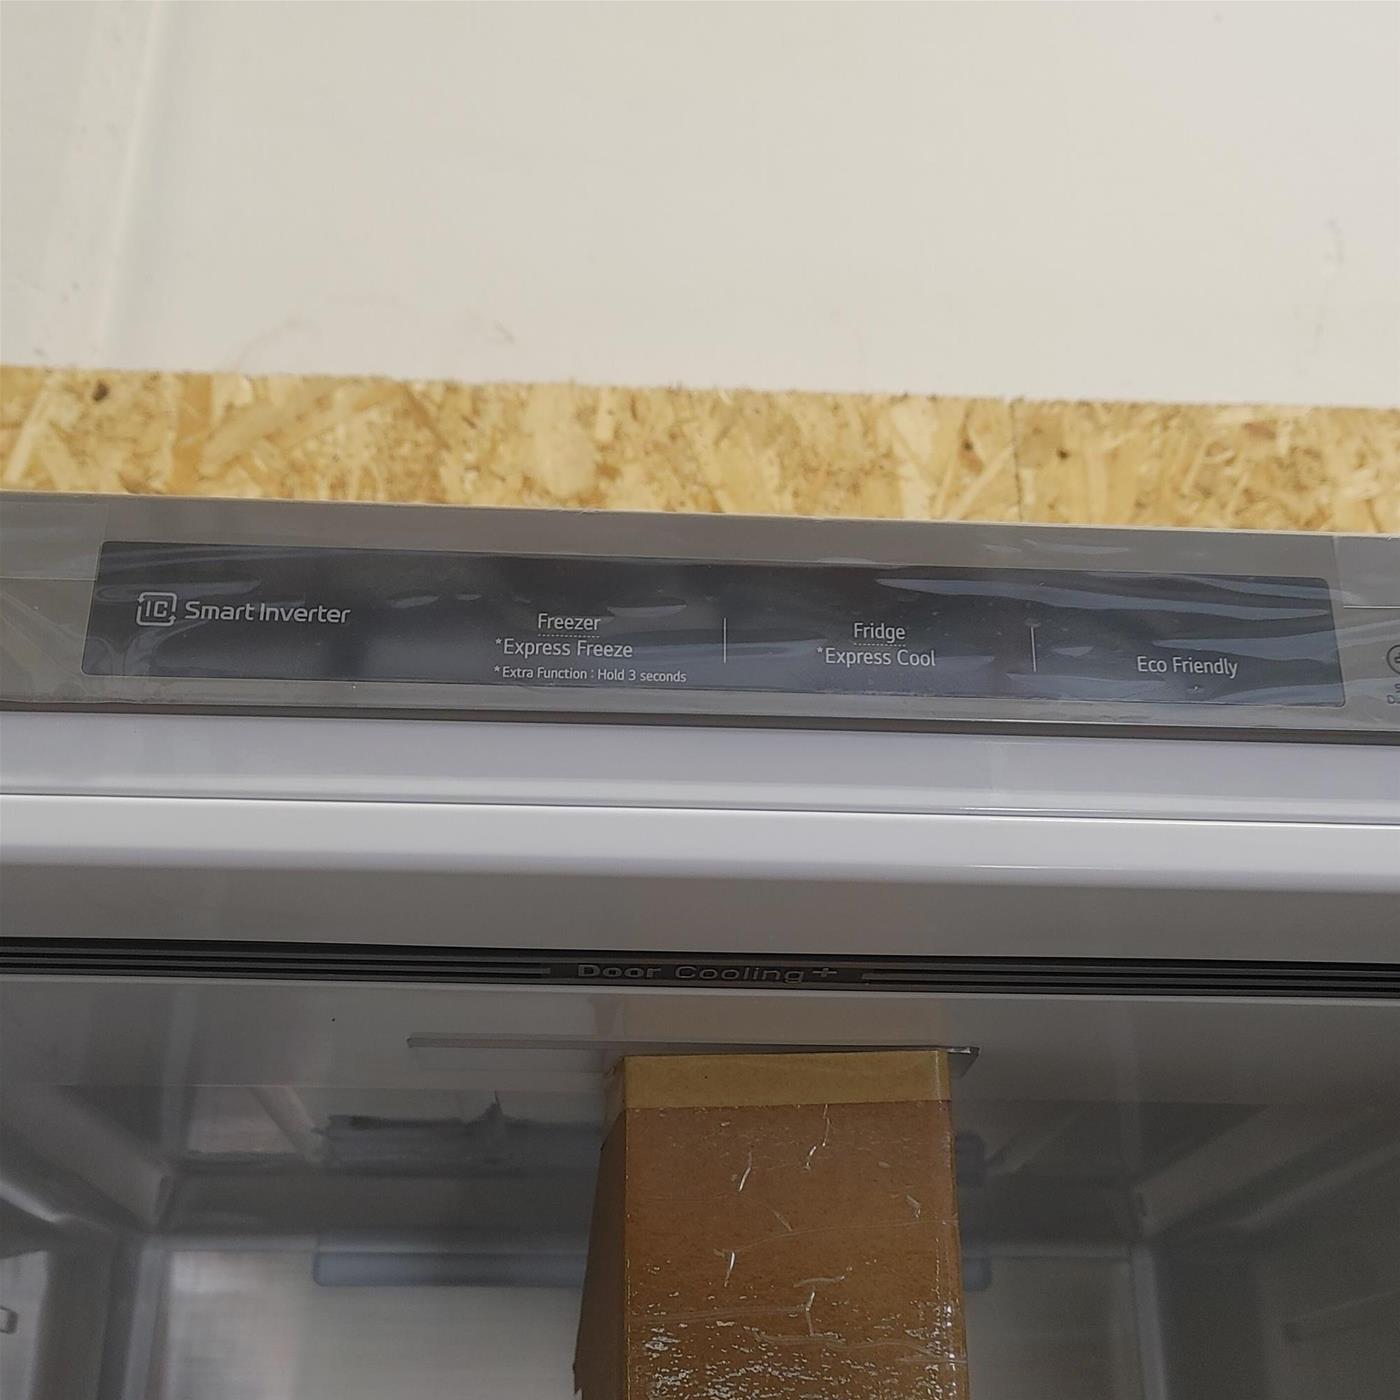 Frigo-congelatore LG GBB72NSVGN Libera installazione 384 LD Acciaio inox